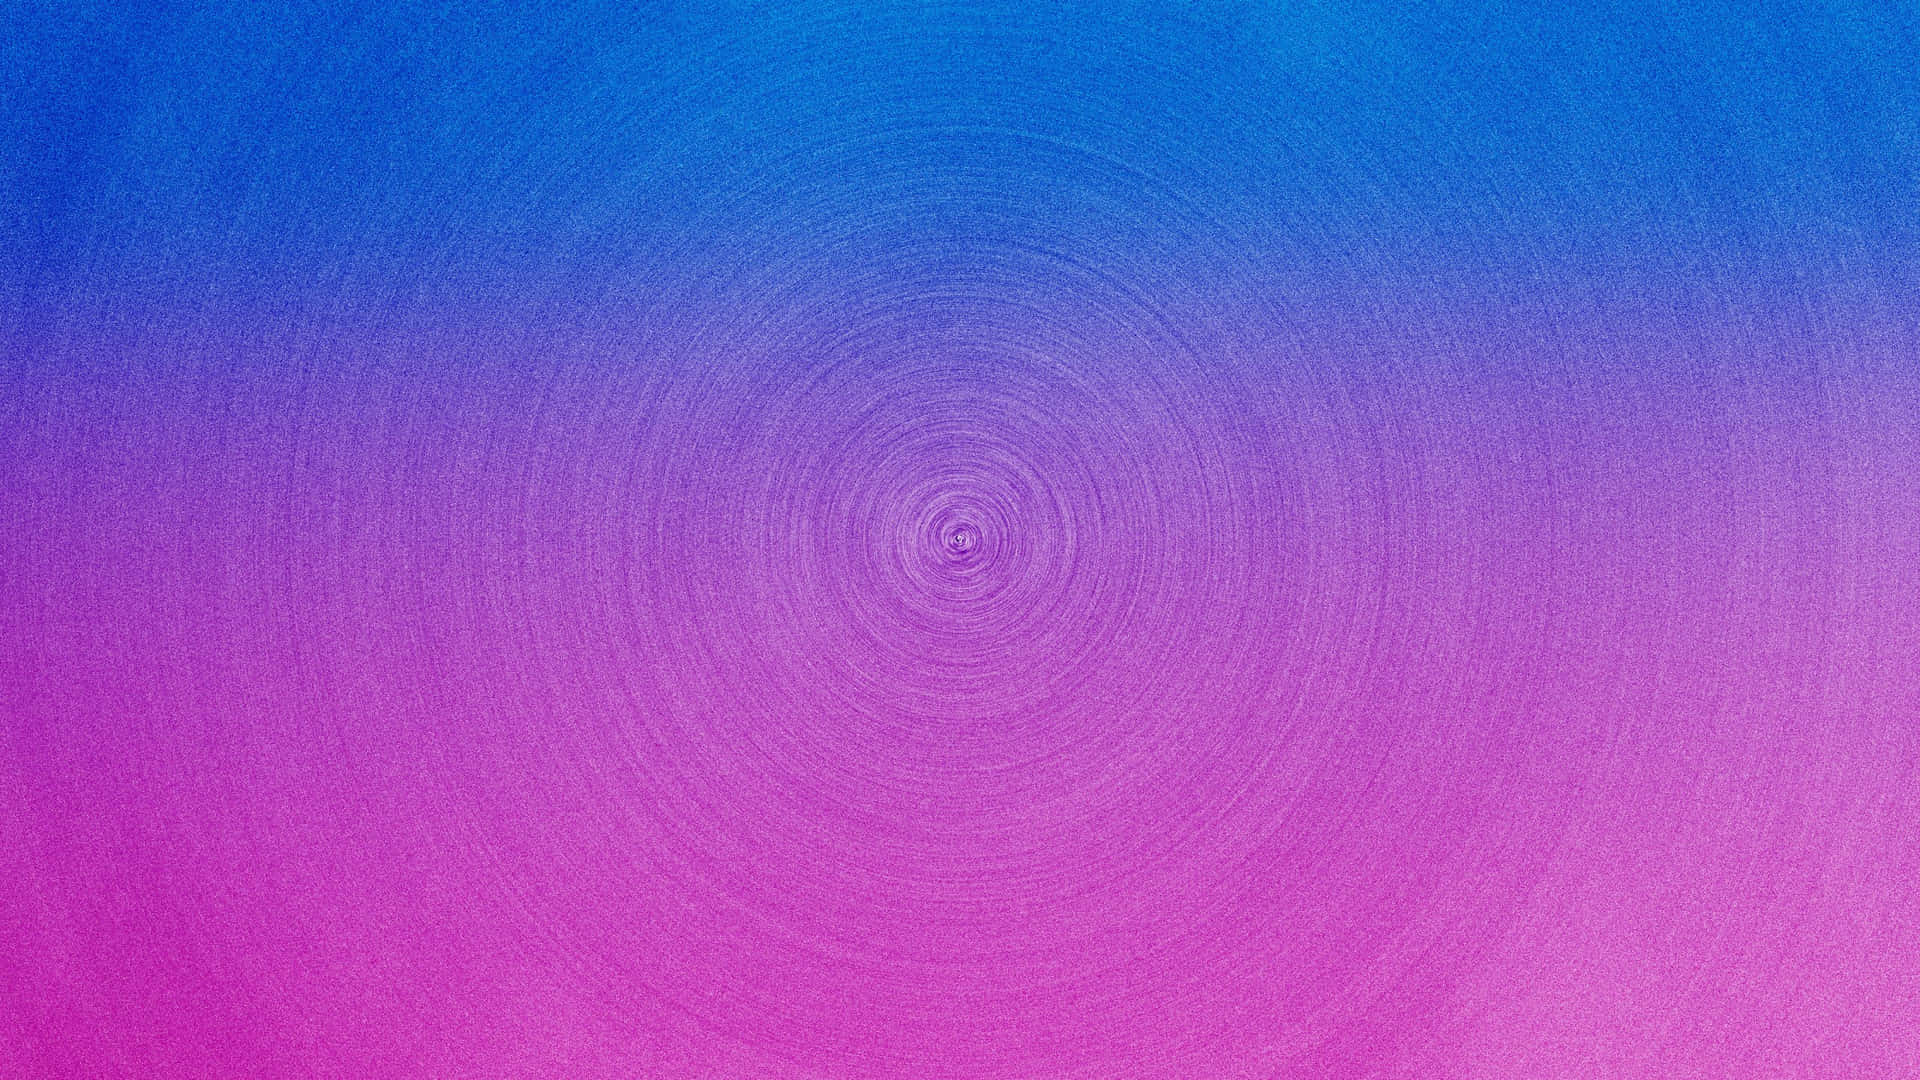 A Blue And Purple Swirled Pattern